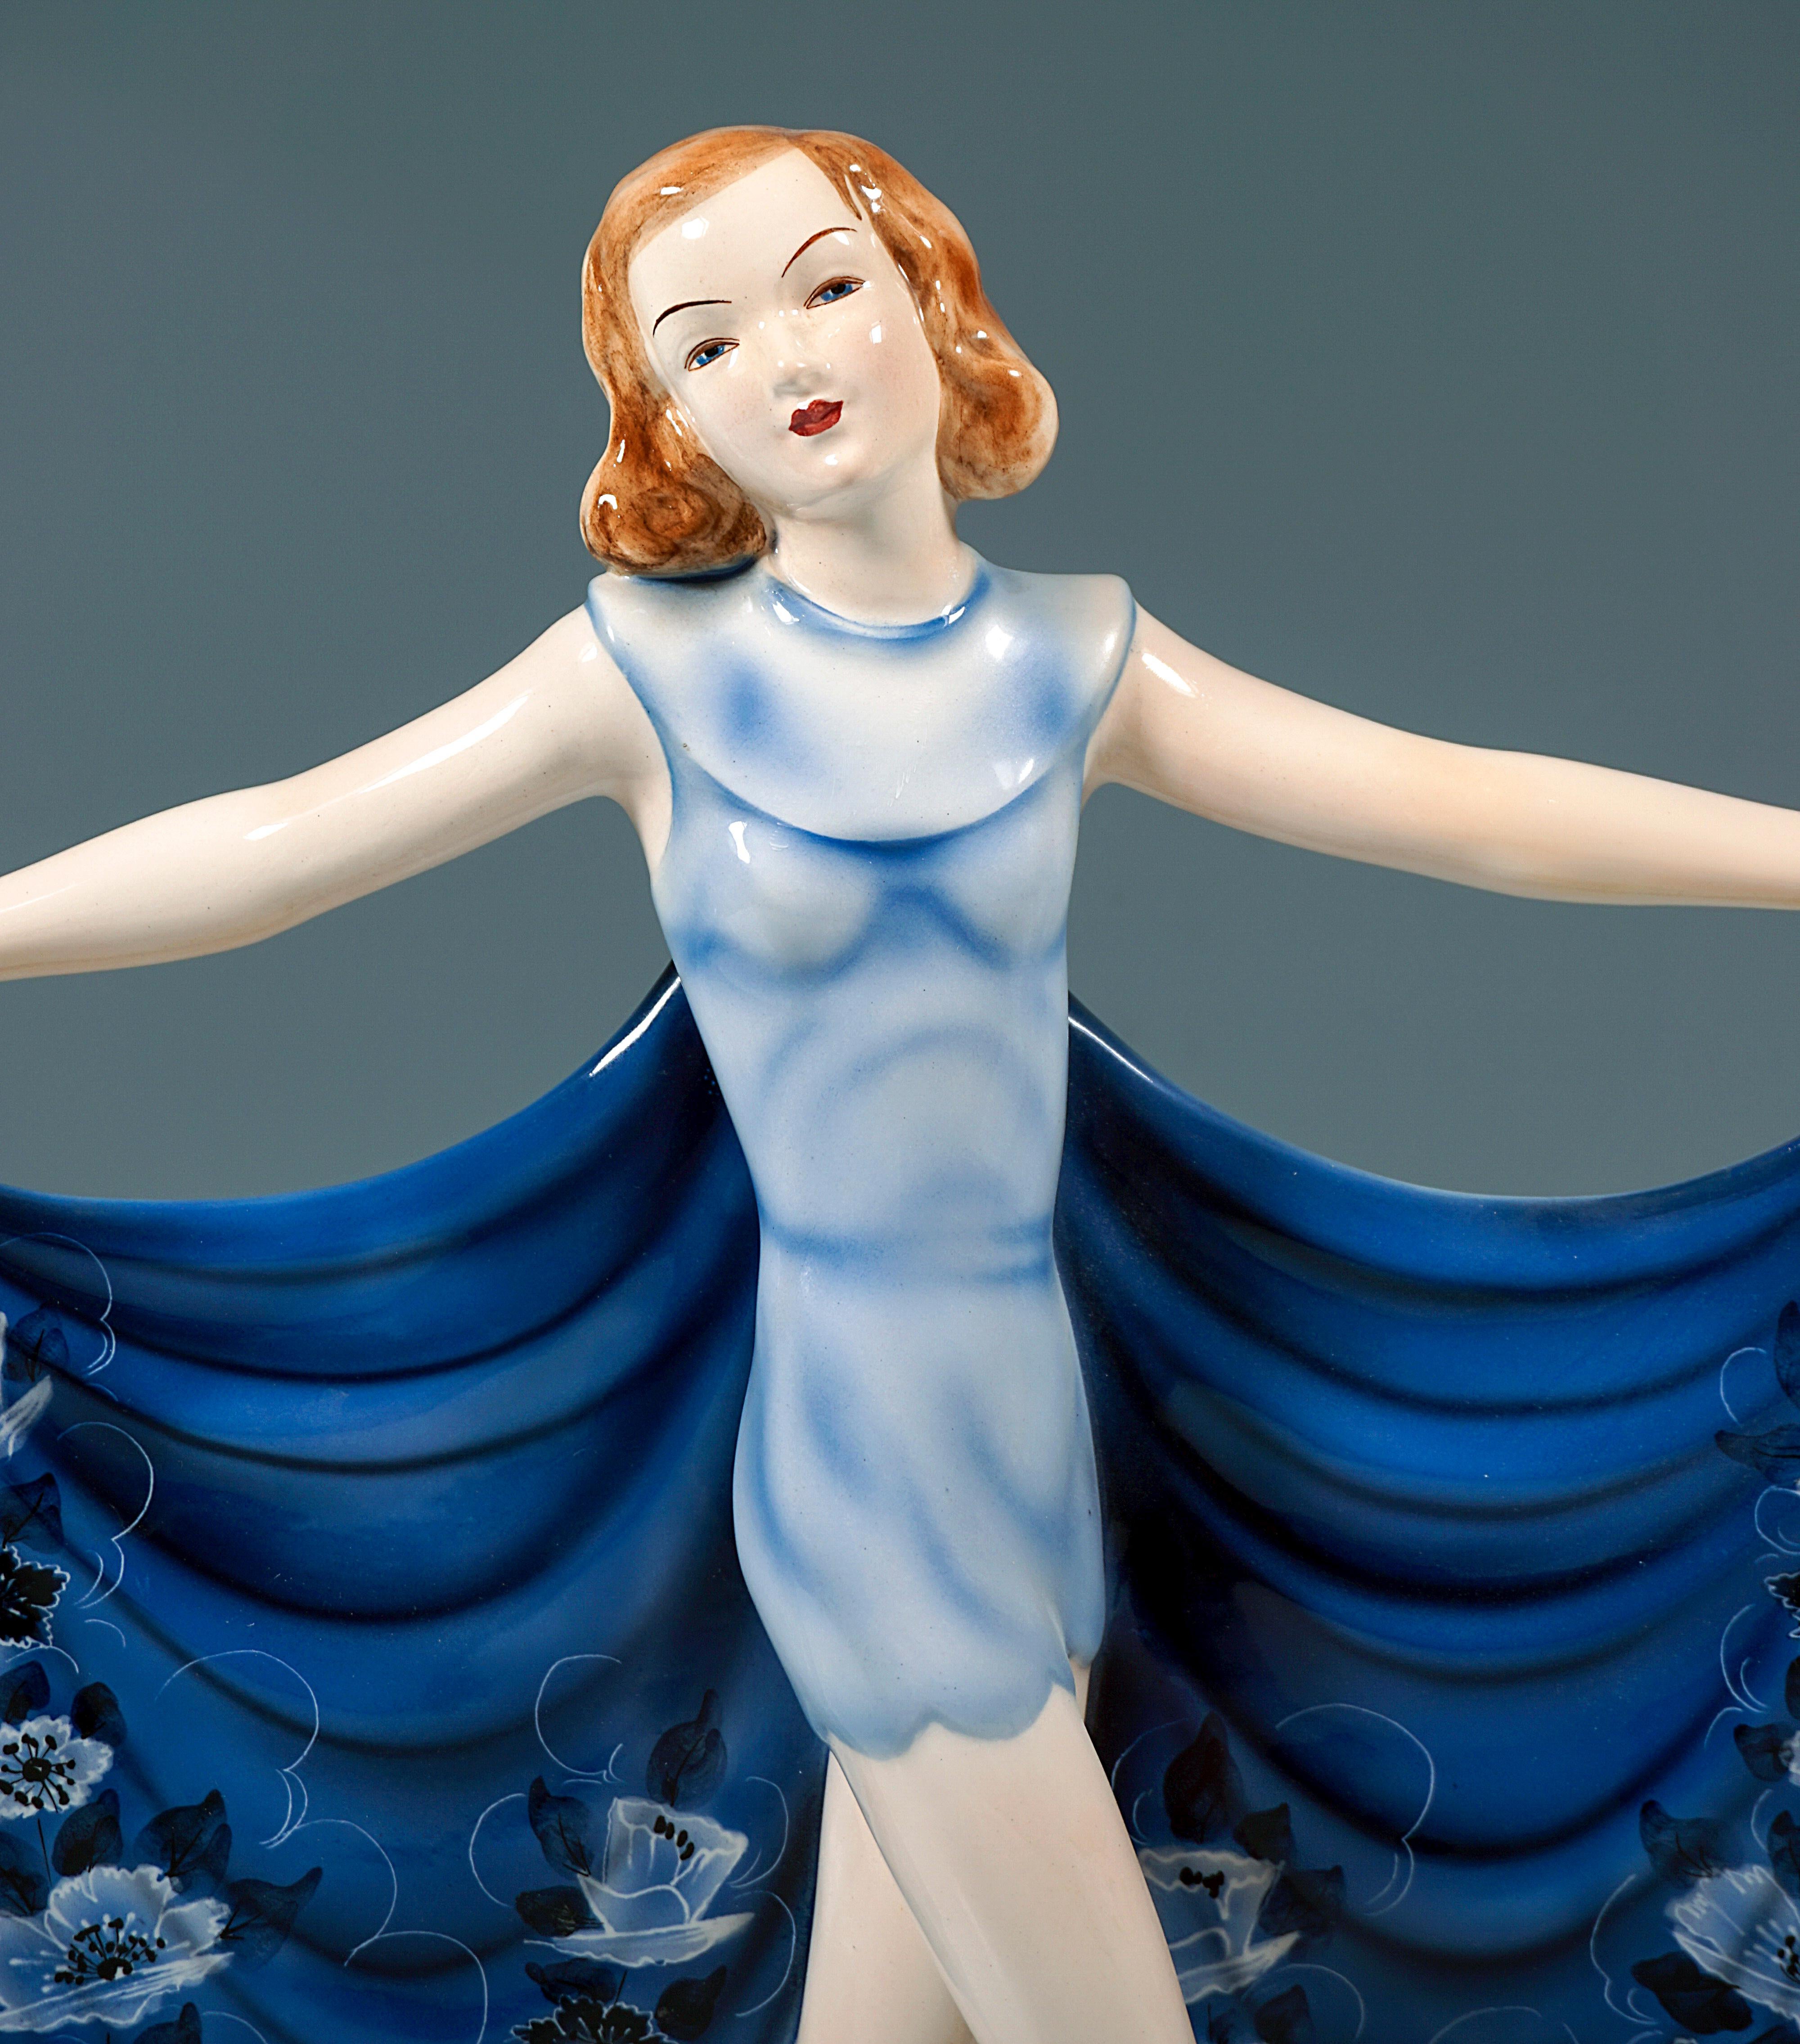 Hand-Crafted 'Revue', Goldscheider Art Déco Dancer in a Blue Dress, by Josef Lorenzl, c 1935